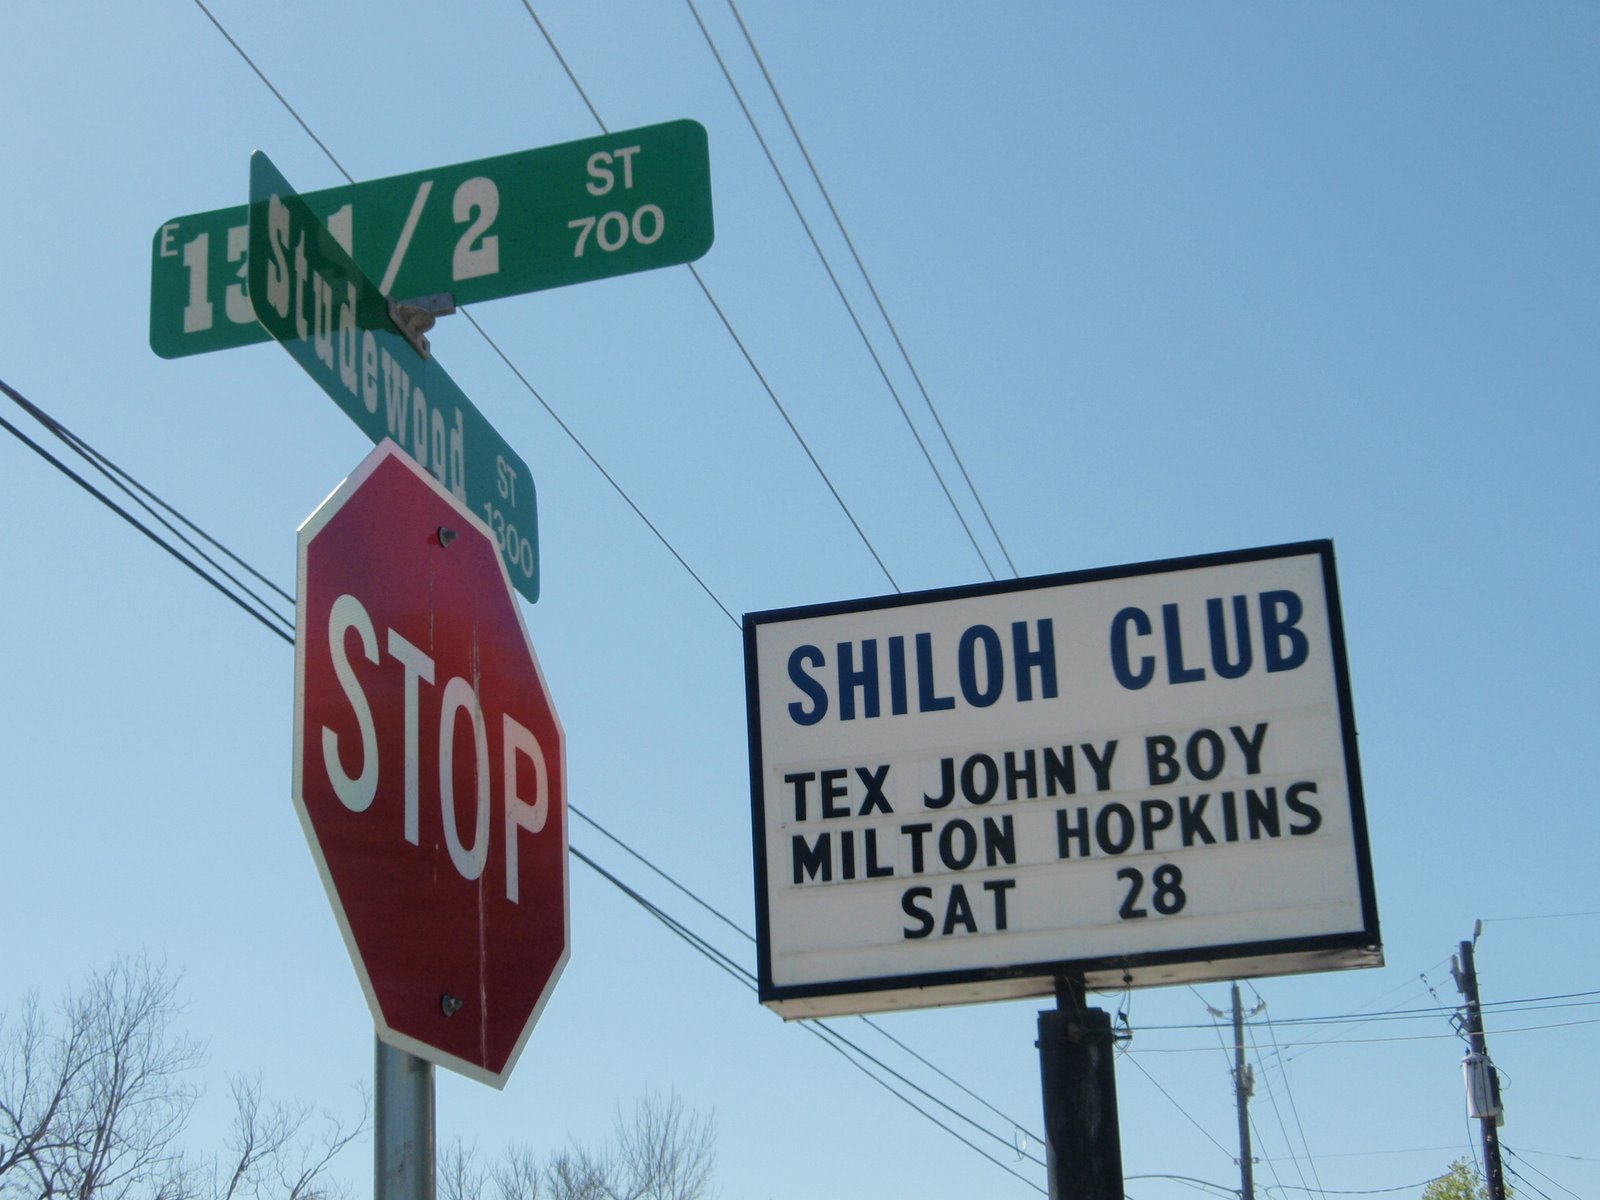 Shiloh Club